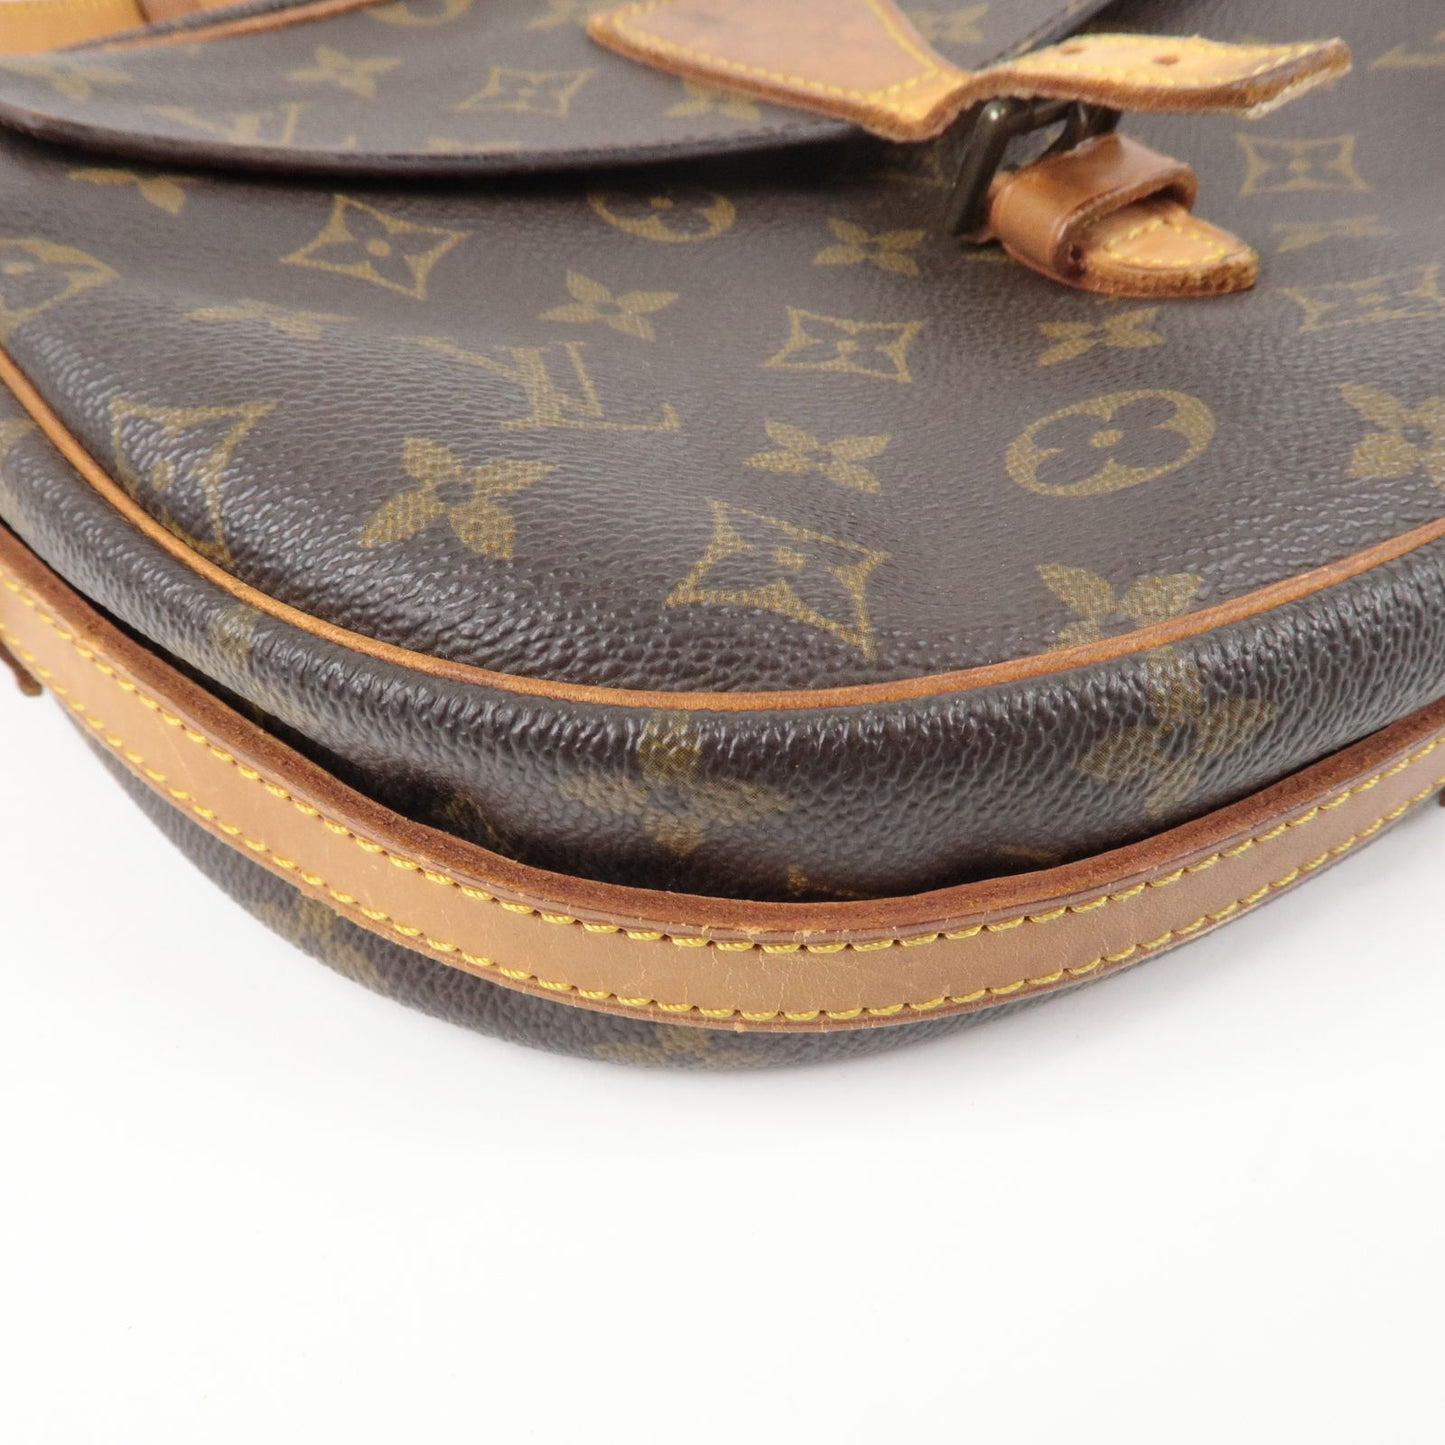 Louis-Vuitton-Monogram-Jeune-Fille-MM-Shoulder-Bag-M51226 – dct